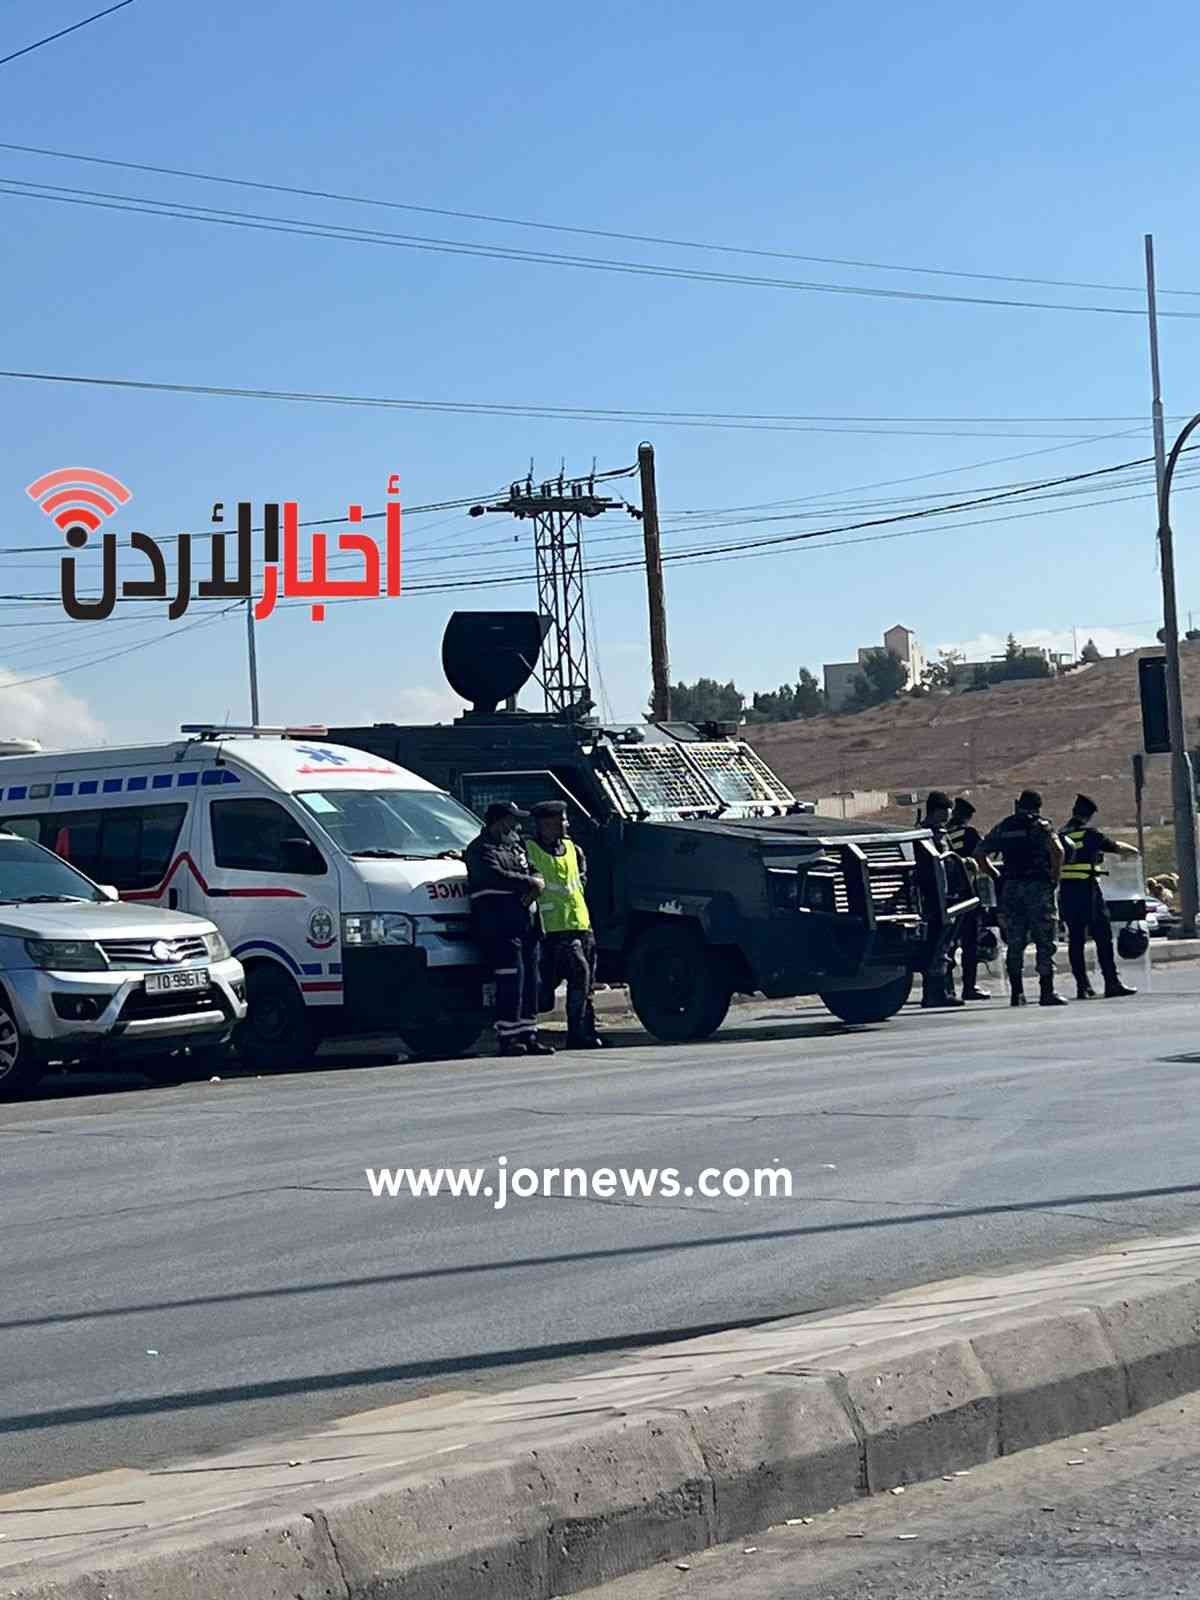 أسماء الطرق المغلقة في عمّان بسبب التظاهرات - صور